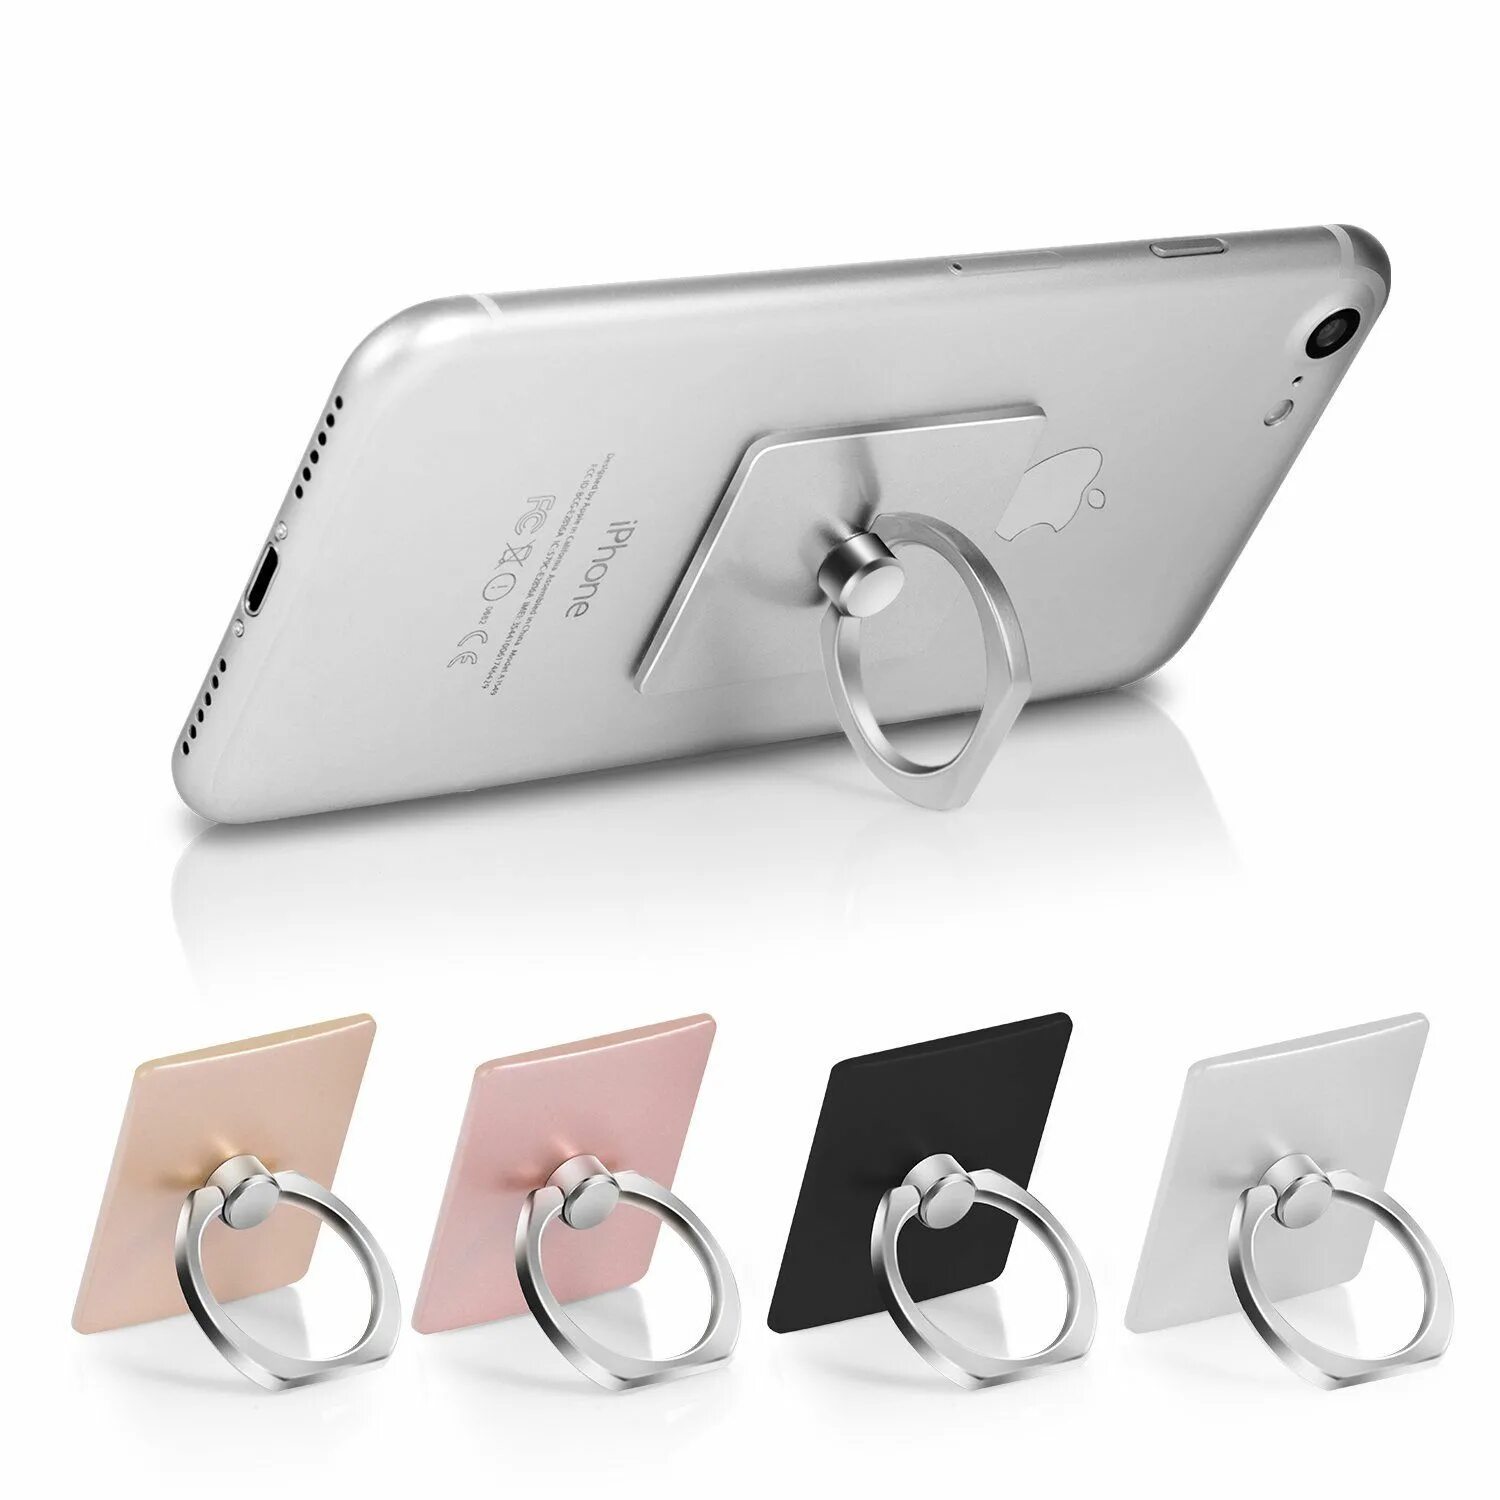 Купить набор для телефона. Держатель-кольцо Baseus Invisible Phone Ring Holder tarnish (SUYB-0a). Mobile Accessories держатель кольцо iphone. Классные аксессуары для телефона. Аксессуары для телефона андроид.